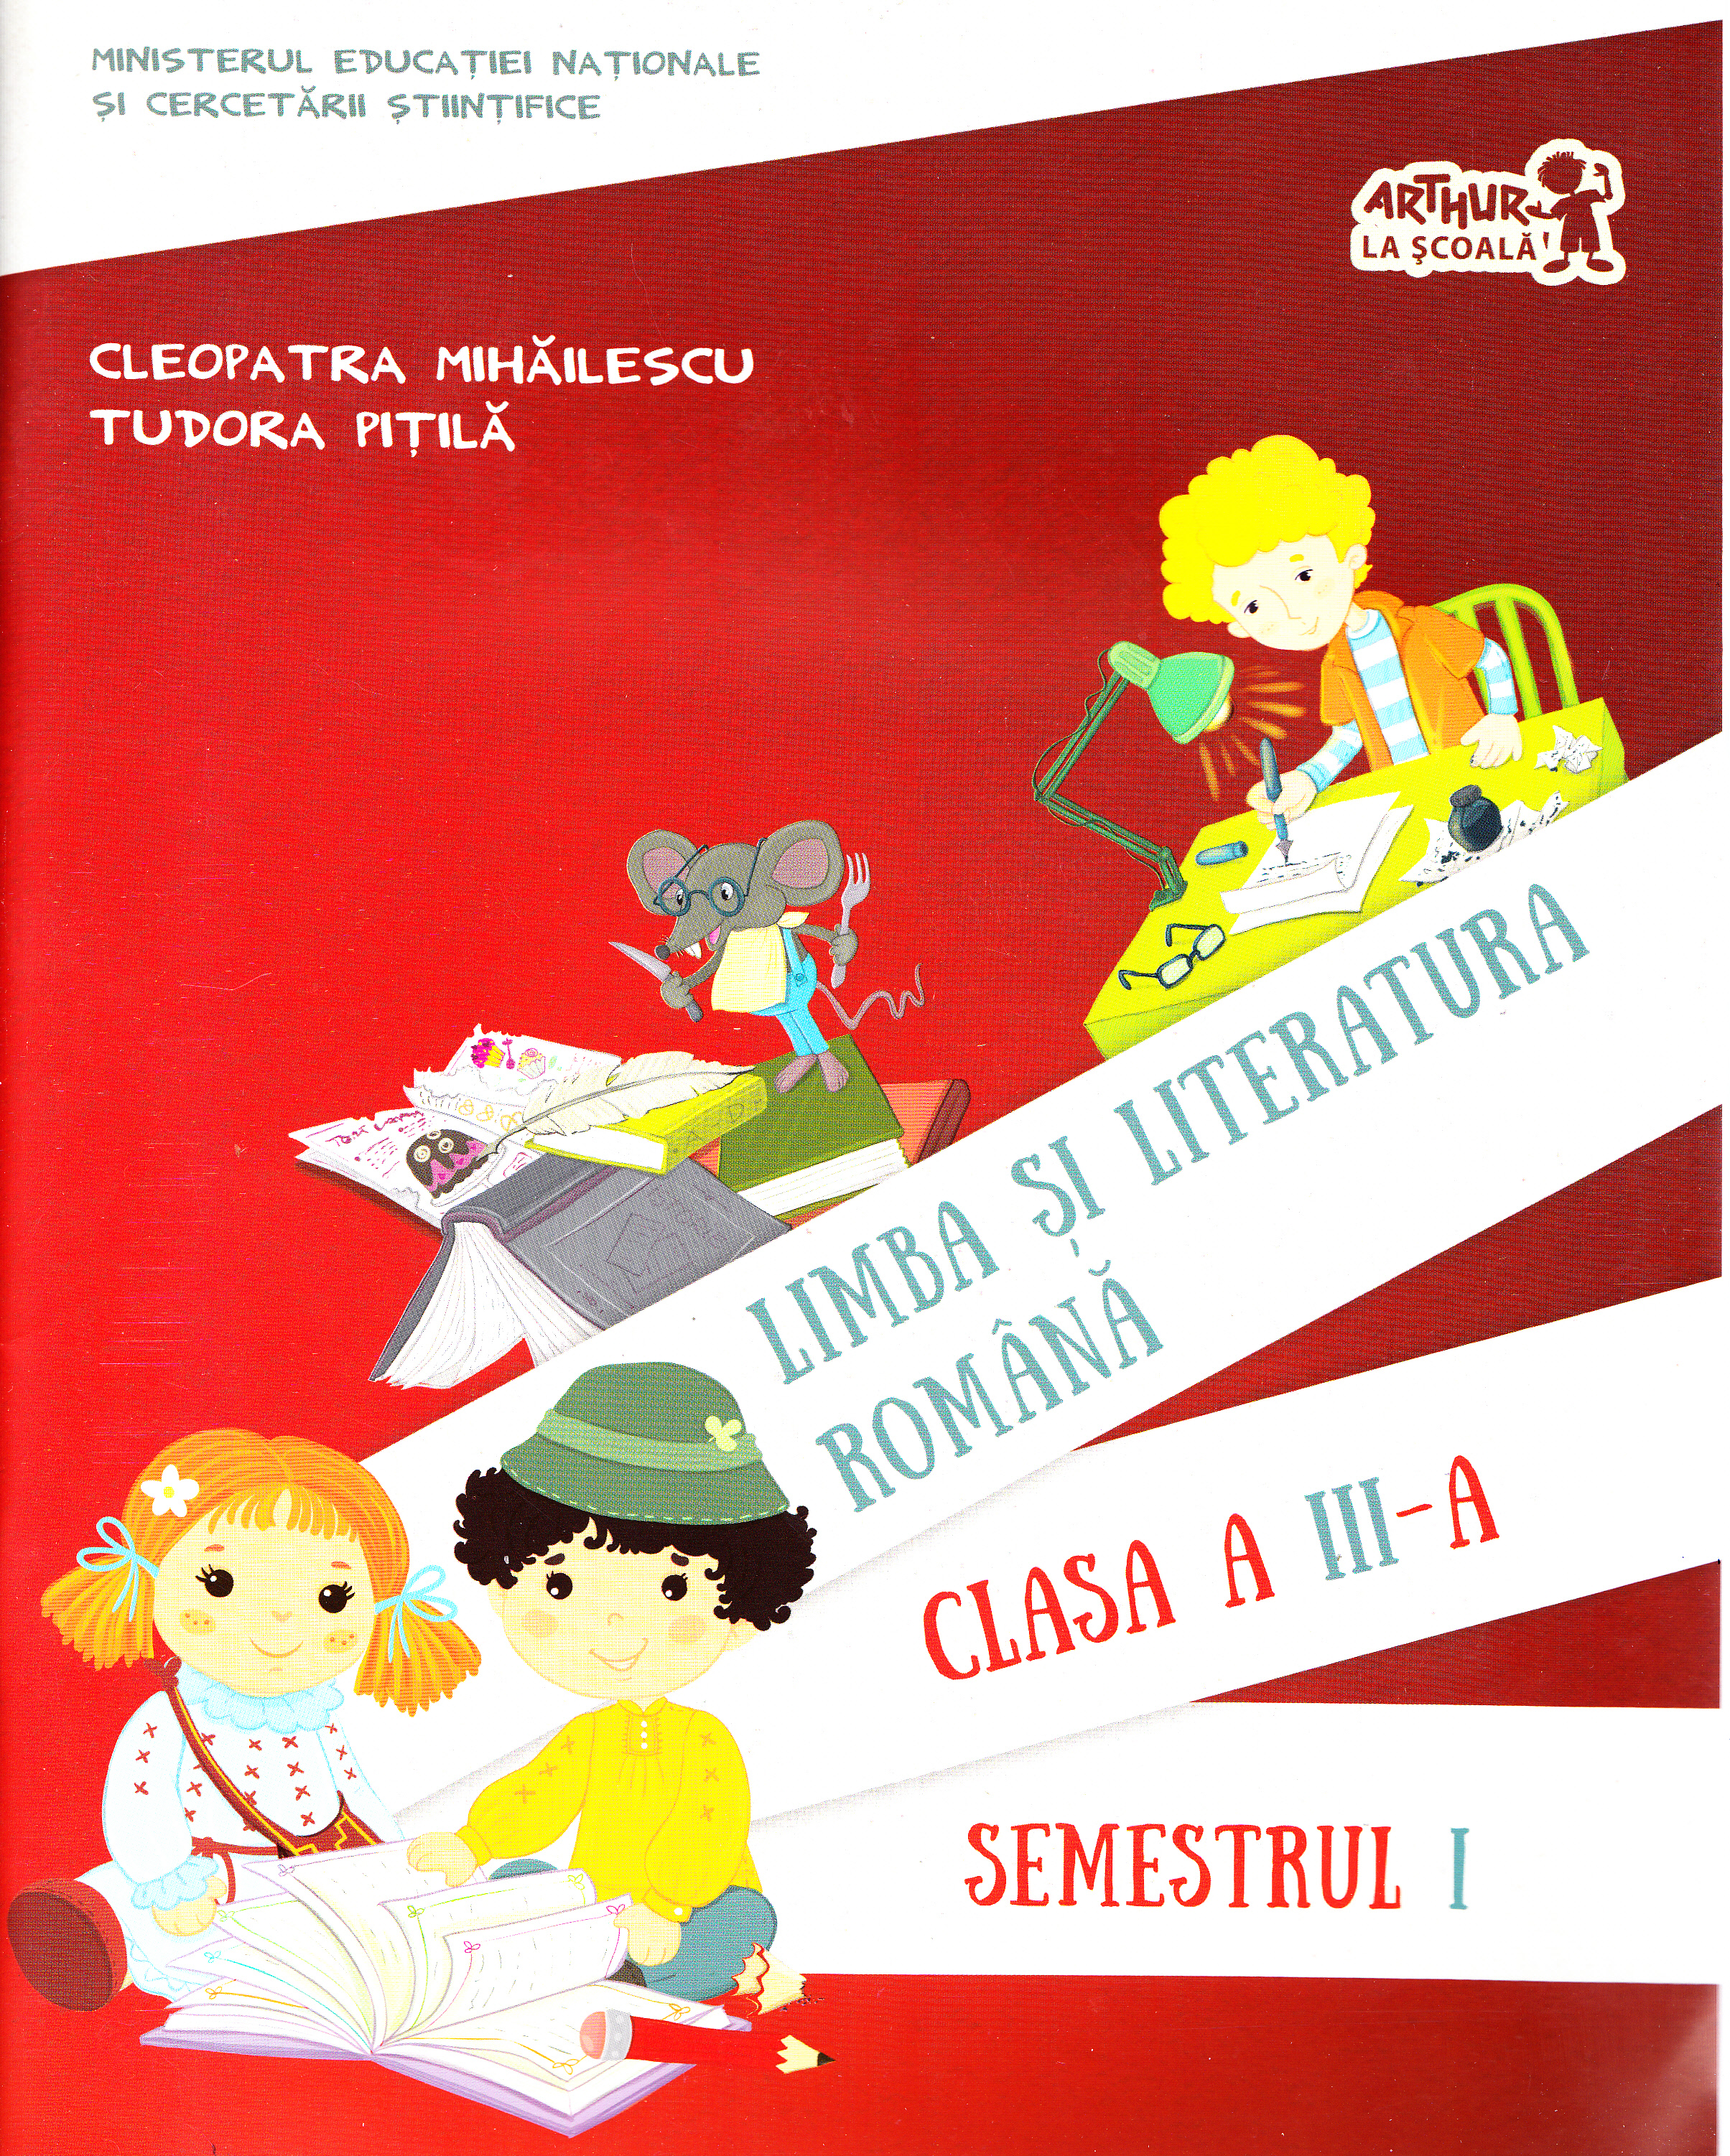 Romana - clasa 3 -  Limba si literatura romana. Semestrul I - Cleopatra Mihailescu, Tudora Pitila